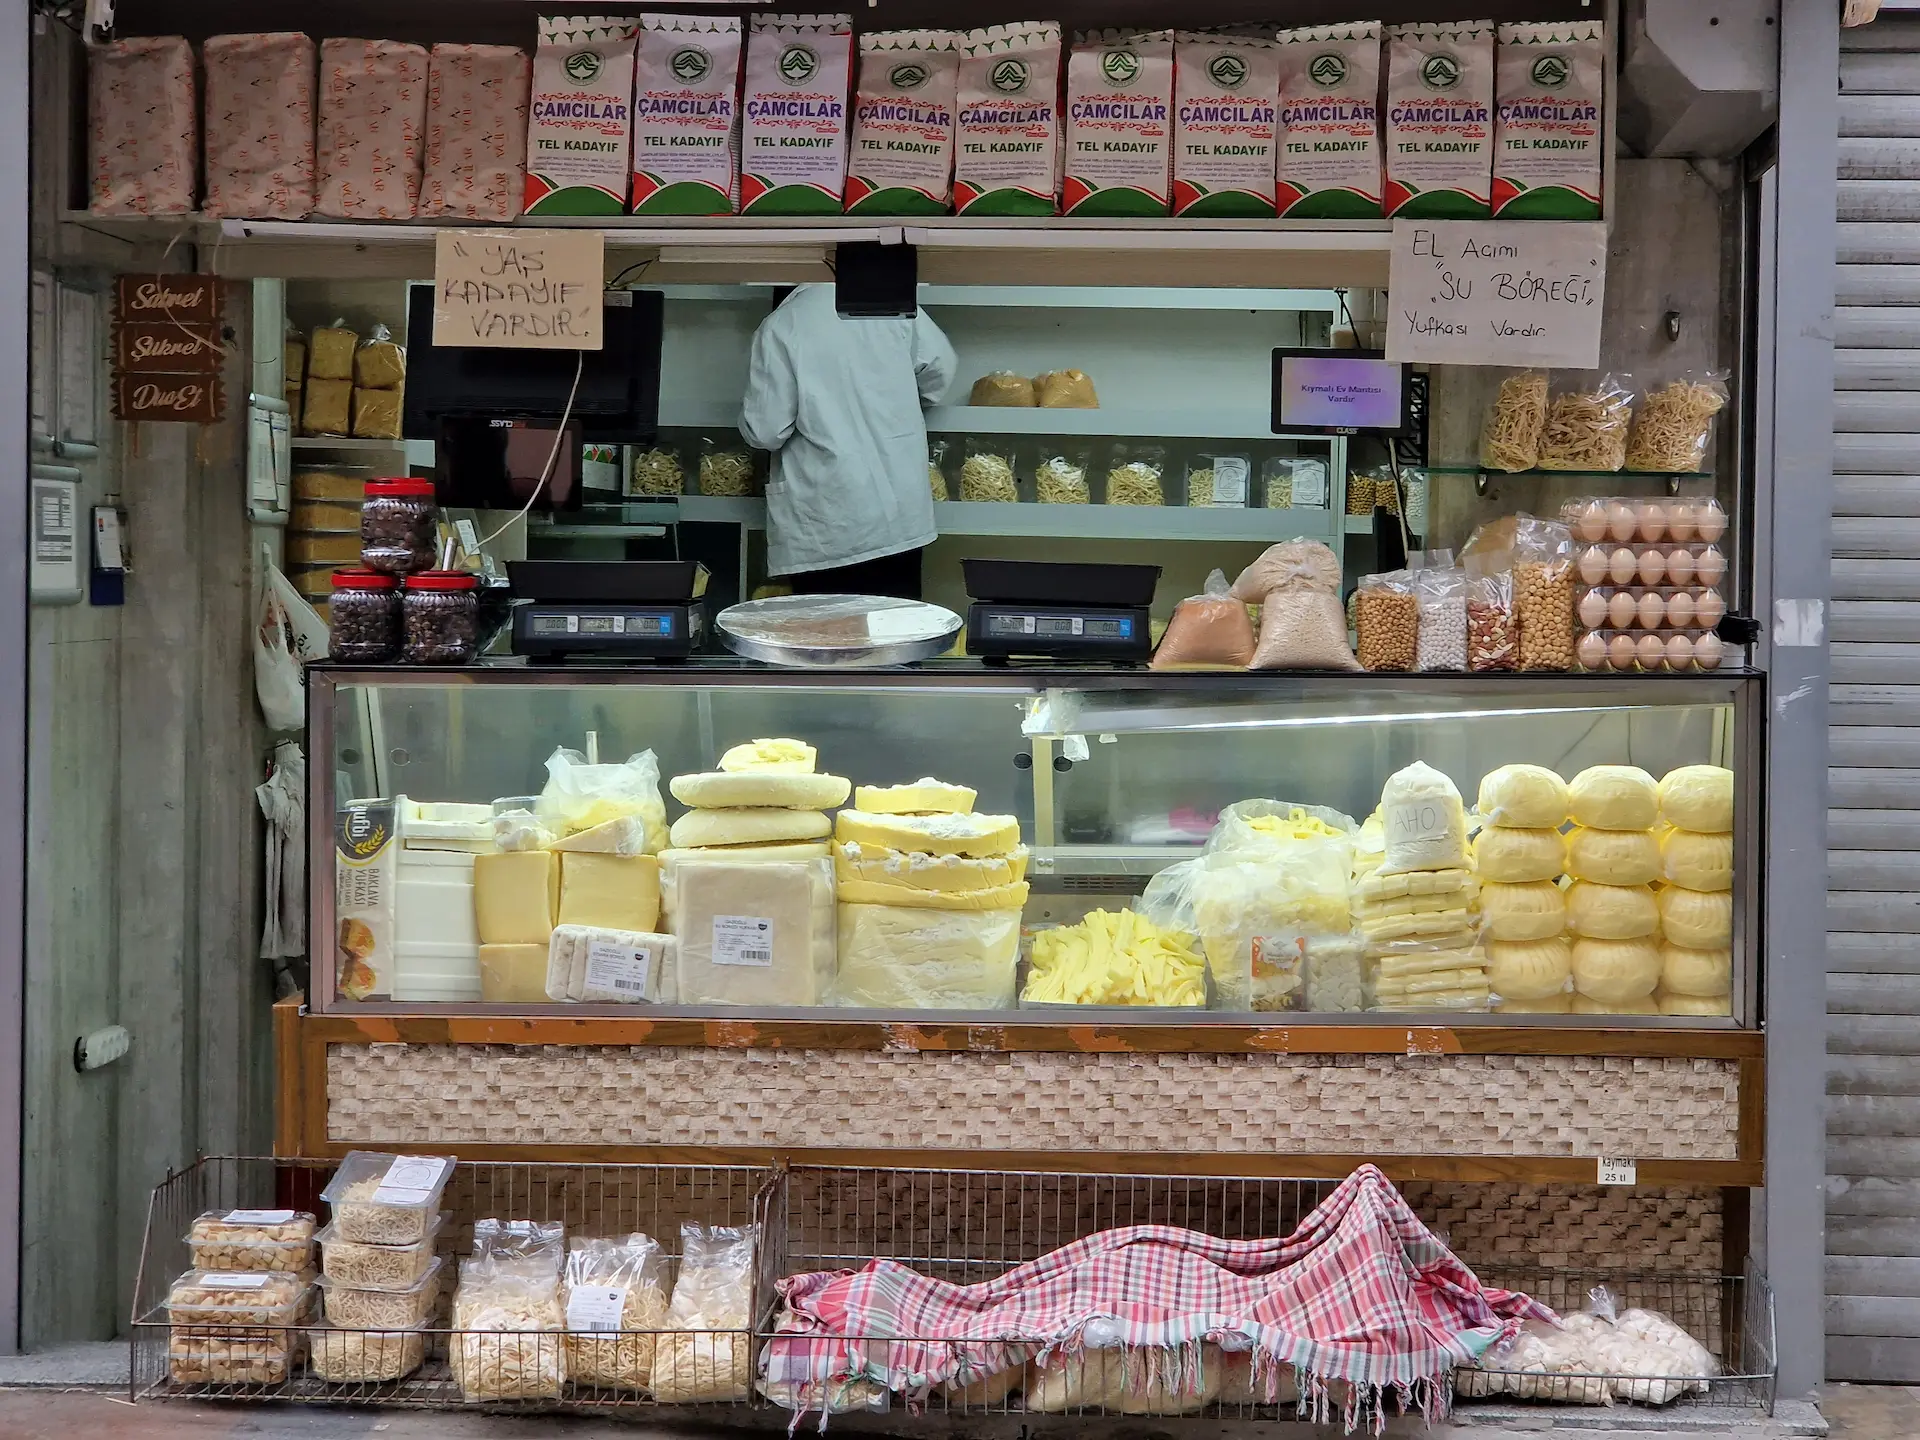 Une petite fromagerie, des fromages de différentes formes dans le présentoir.